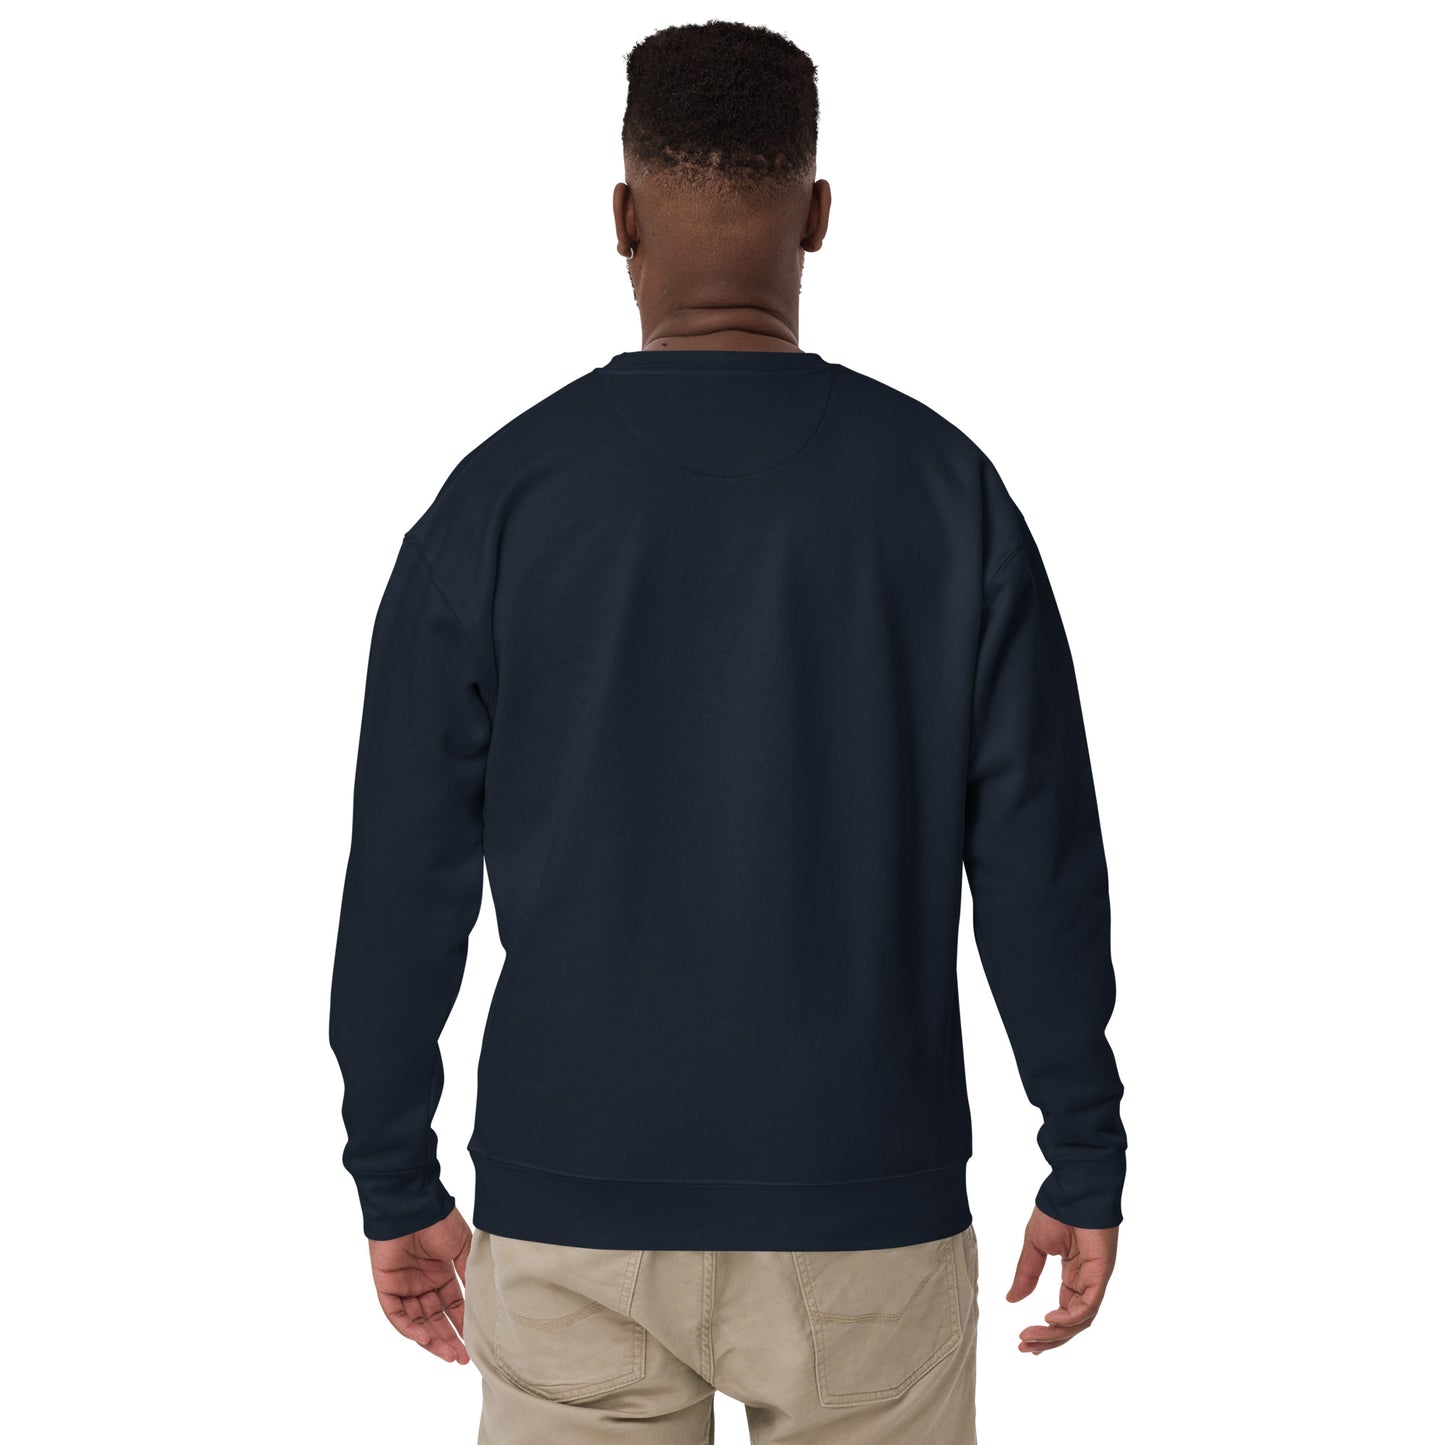 Unisex Premium Sweatshirt - Clarilix